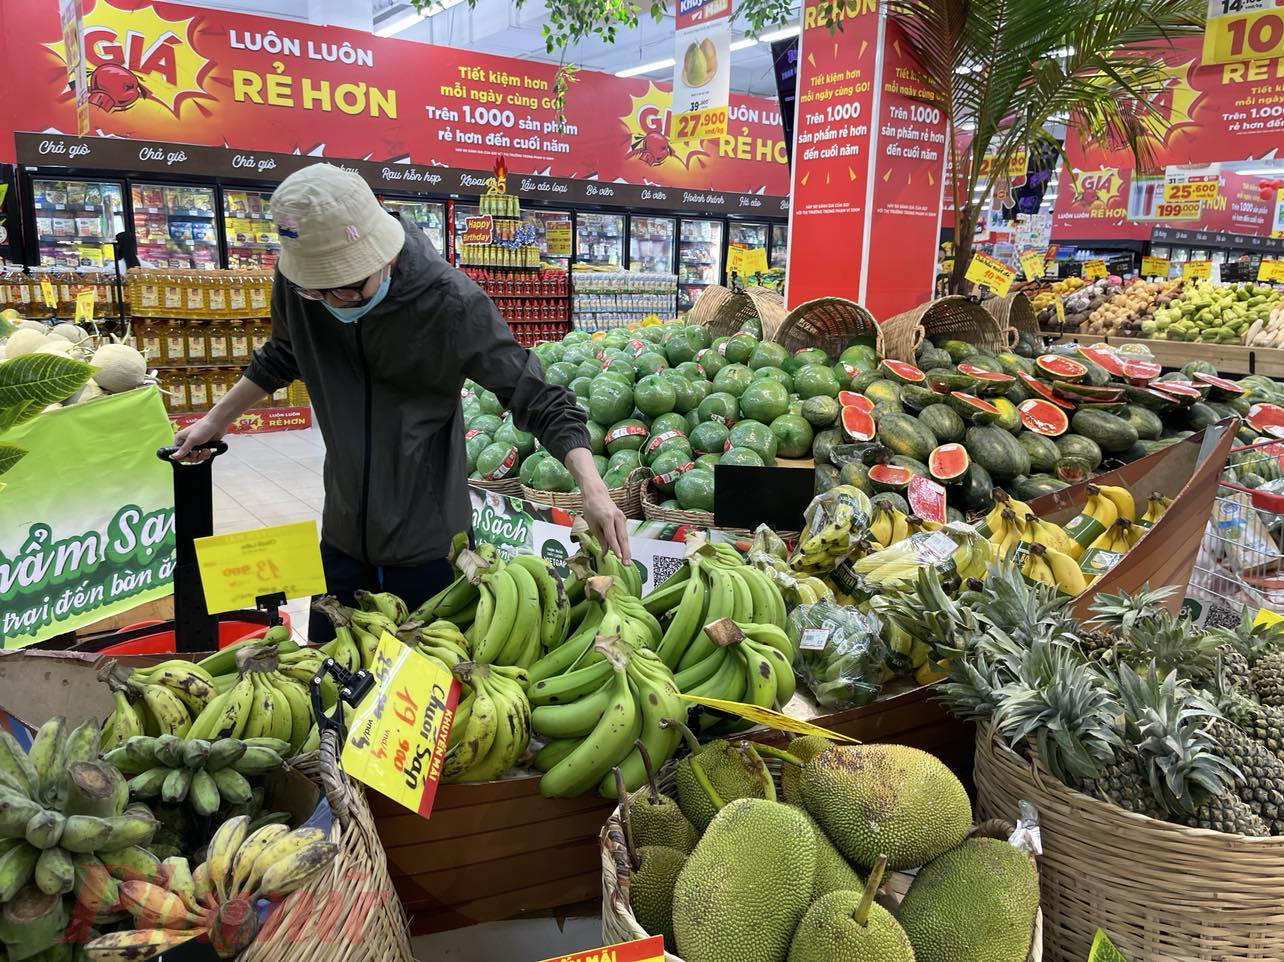 Gần 40% người tiêu dùng được khảo sát cho rằng mua nông sản tại cửa hàng thuận tiện hơn - Ảnh: Nguyễn Cẩm